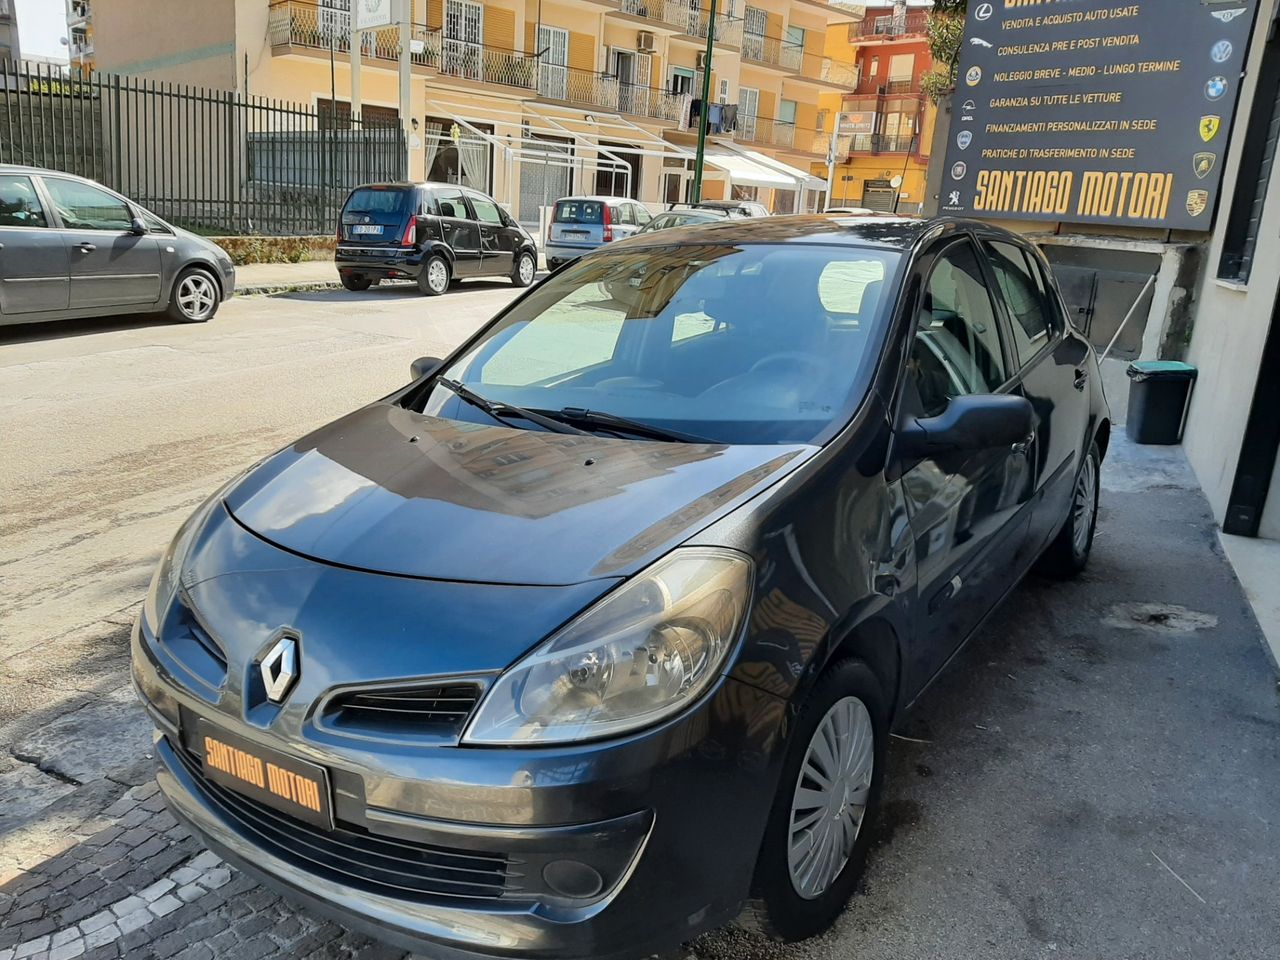 Renault Clio GARANZIA 1 ANNO